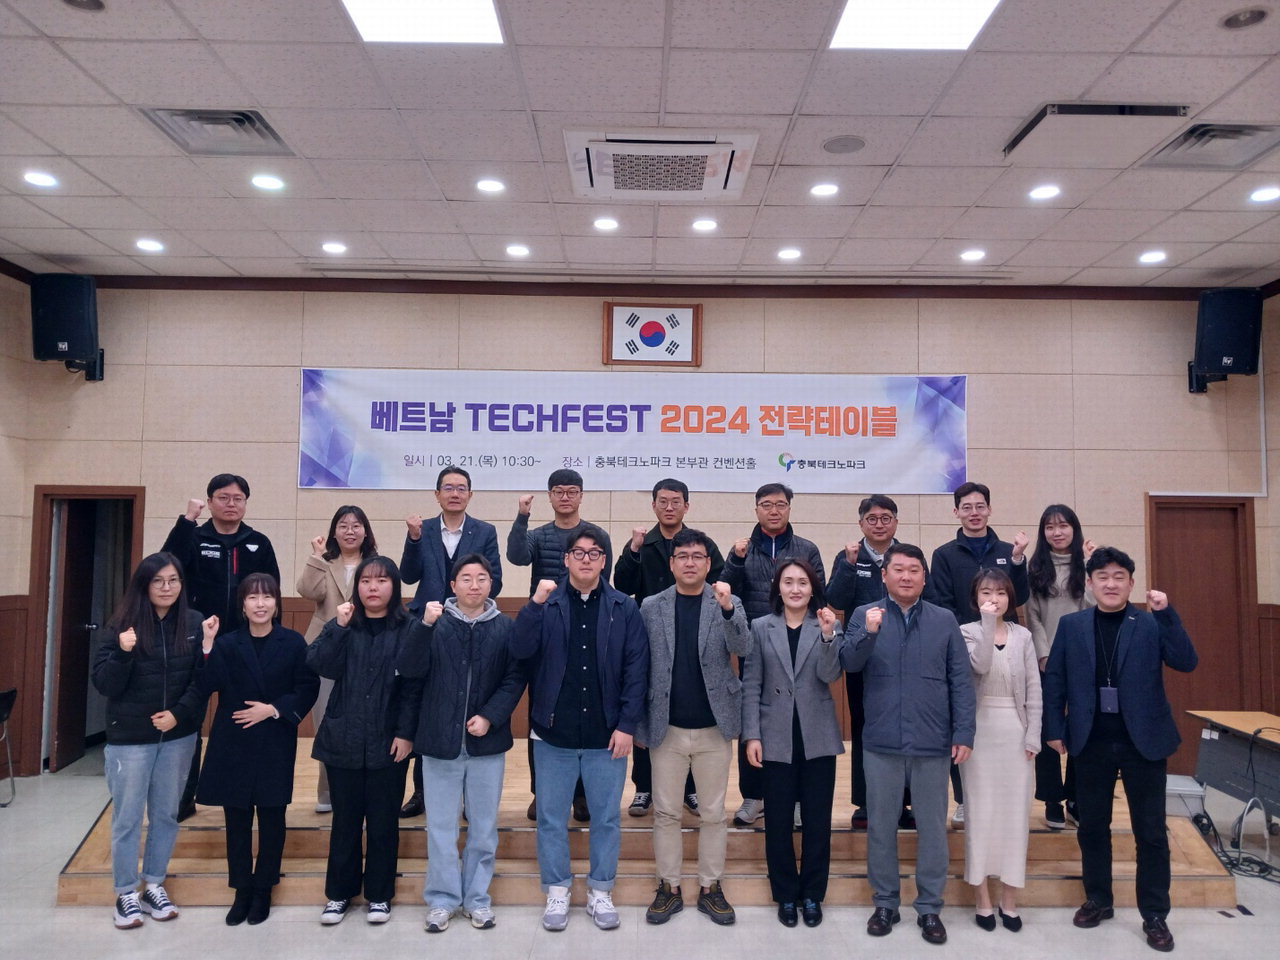 청주시는 21일 충북테크노파크 컨벤션홀에서 '베트남 테크페스트(TECHFEST) 전략테이블'을 개최했다./청주시